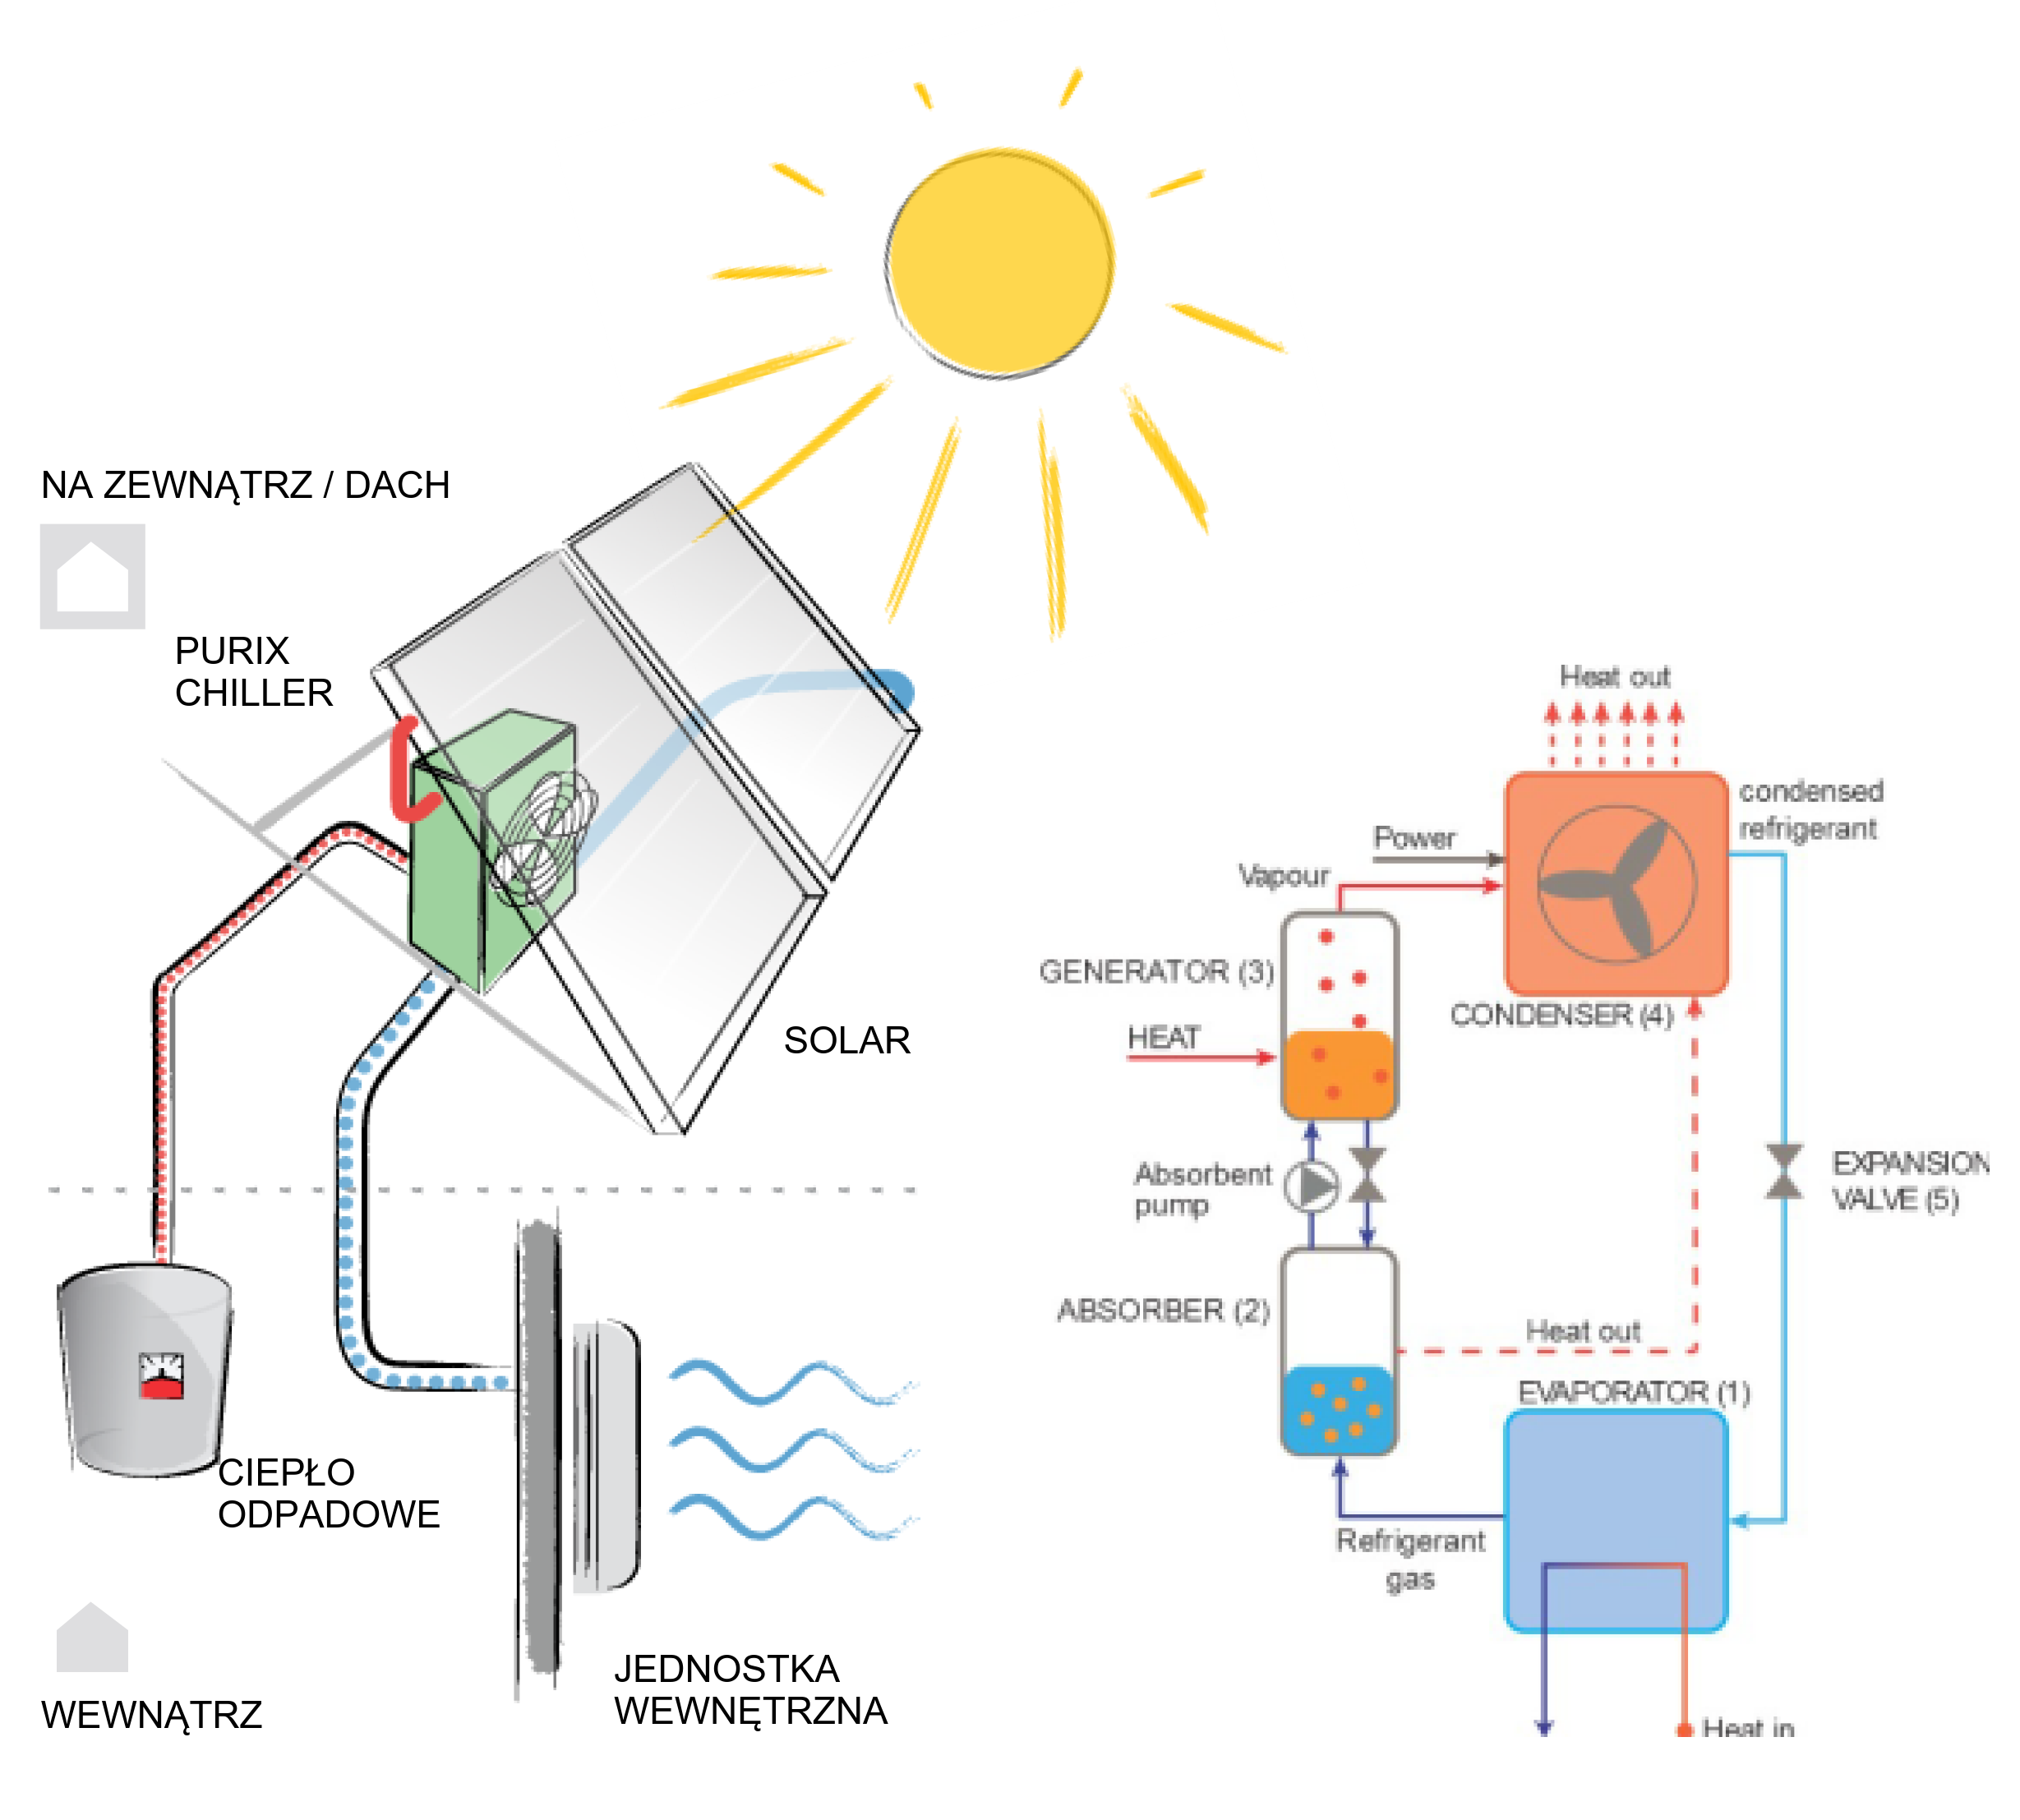 Purix chłodzenie solarne jak działa schemat